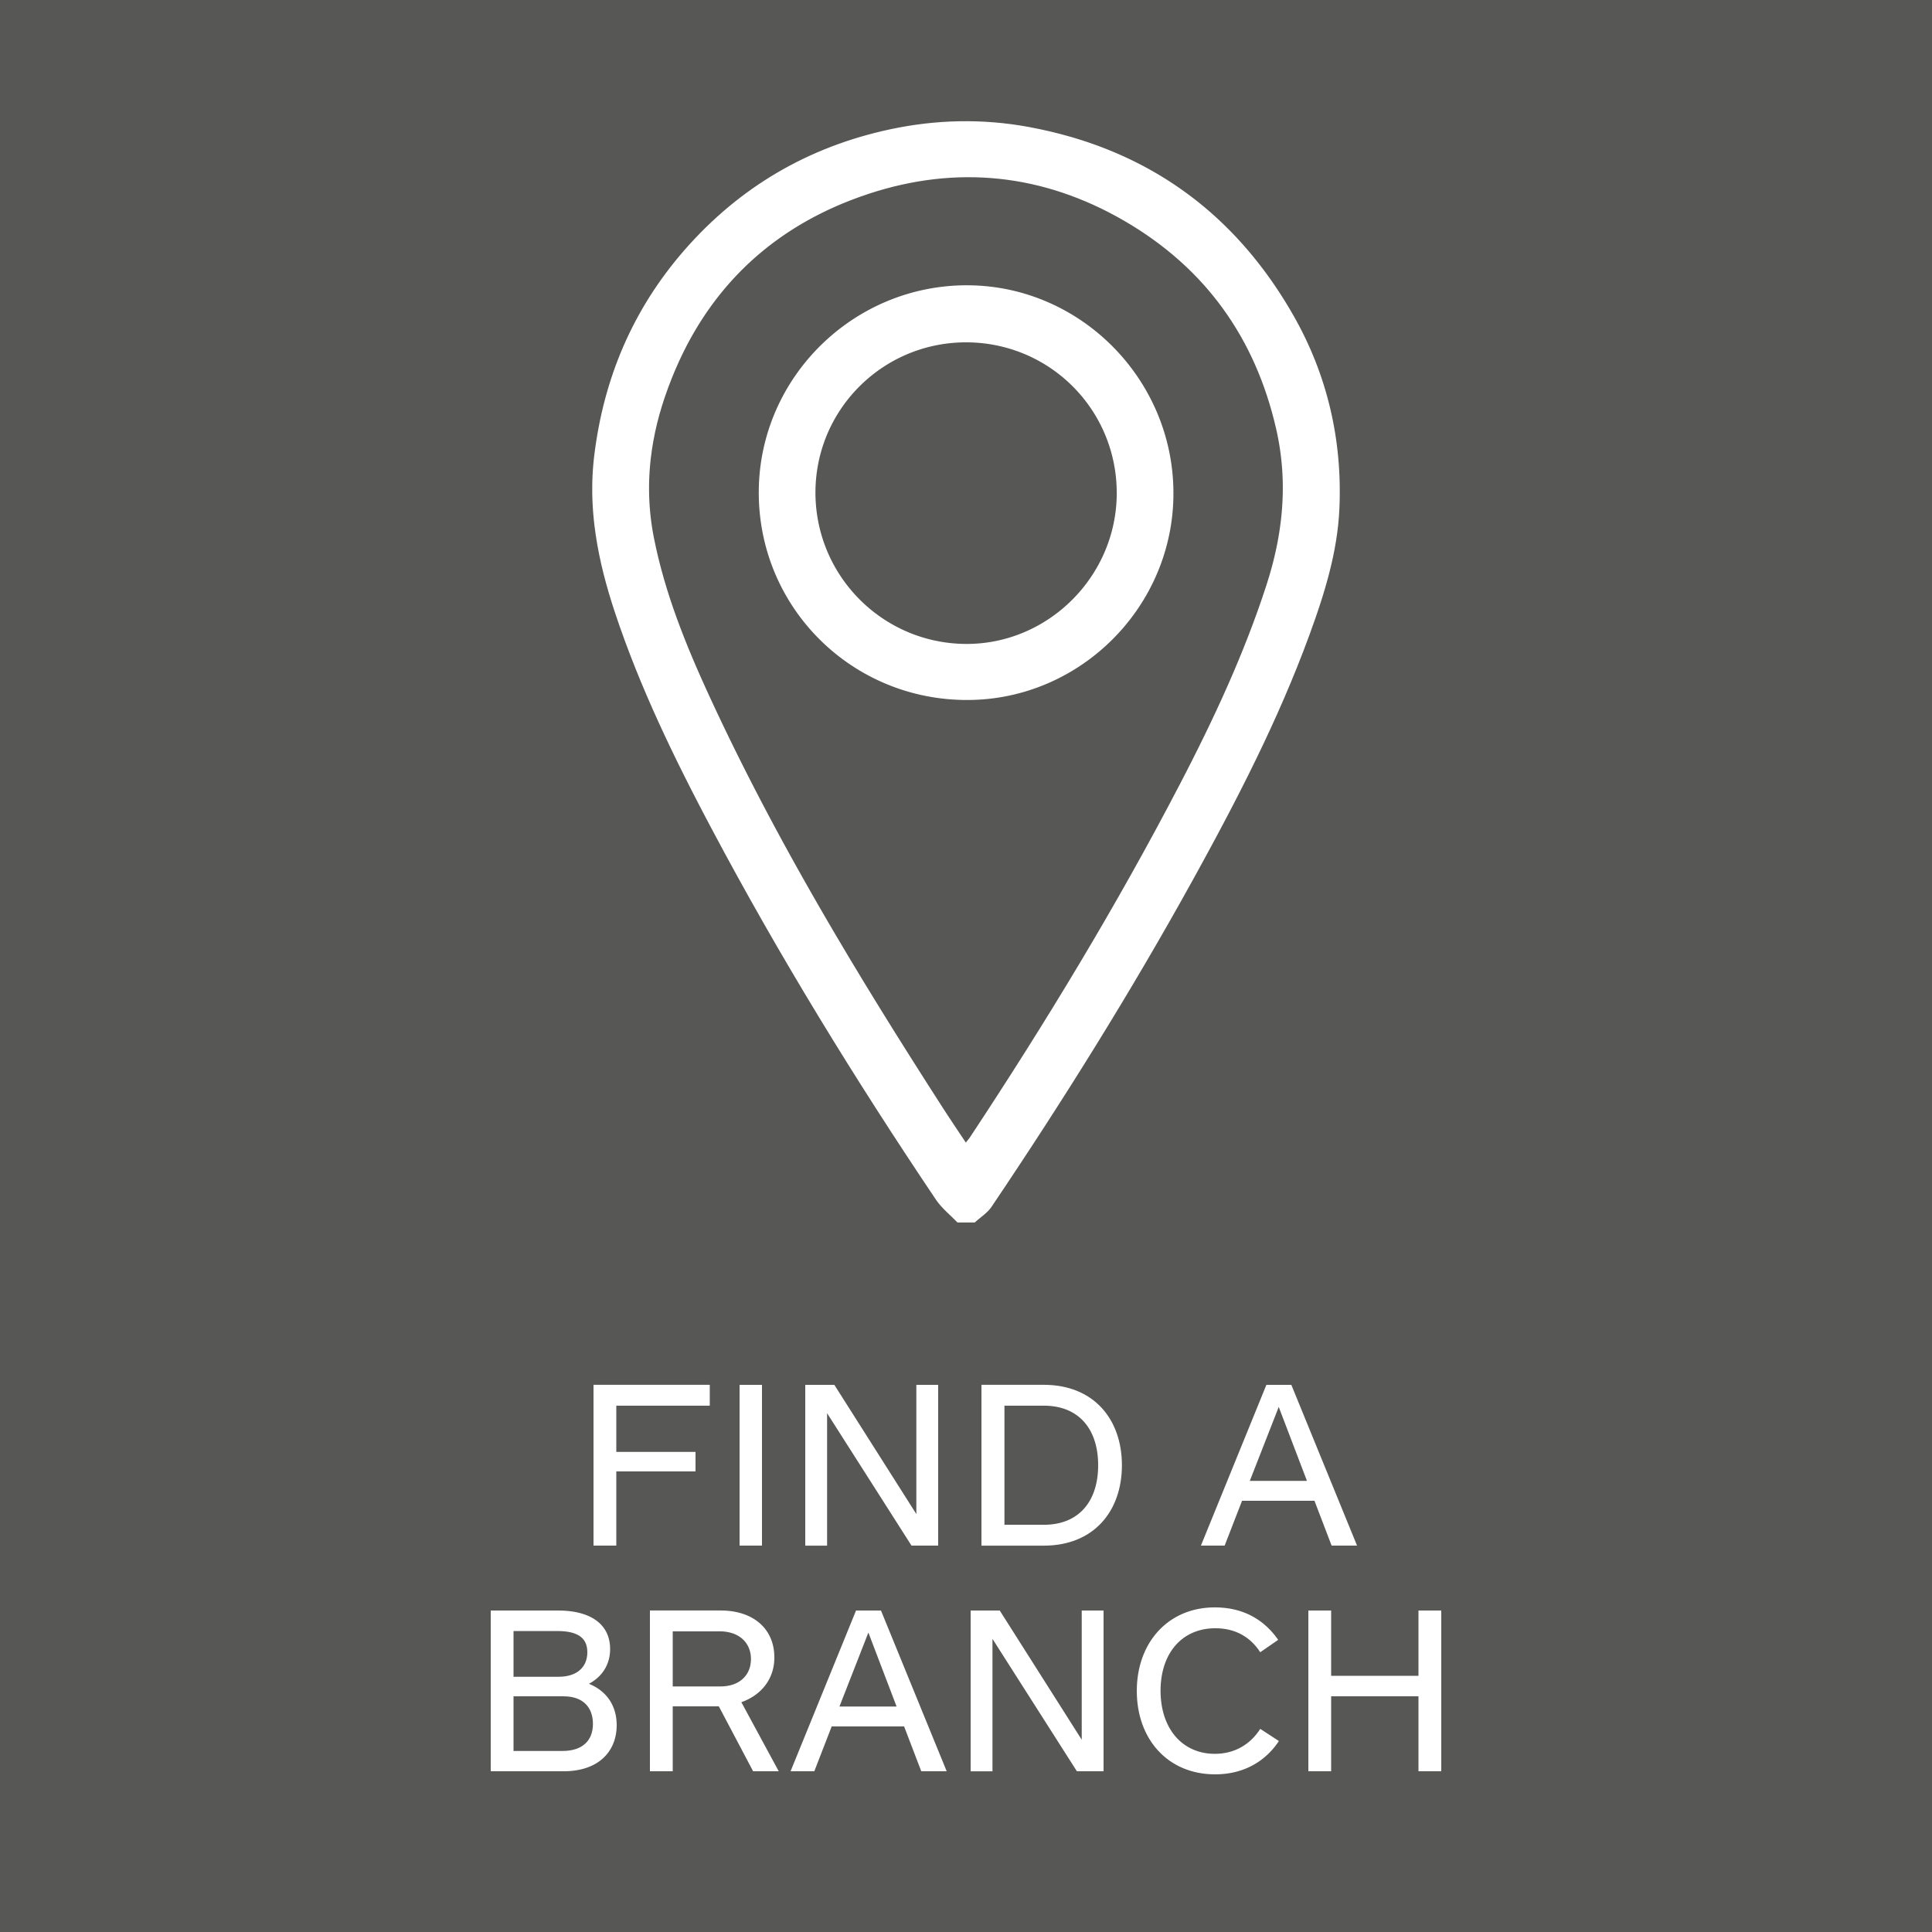 Find a Branch